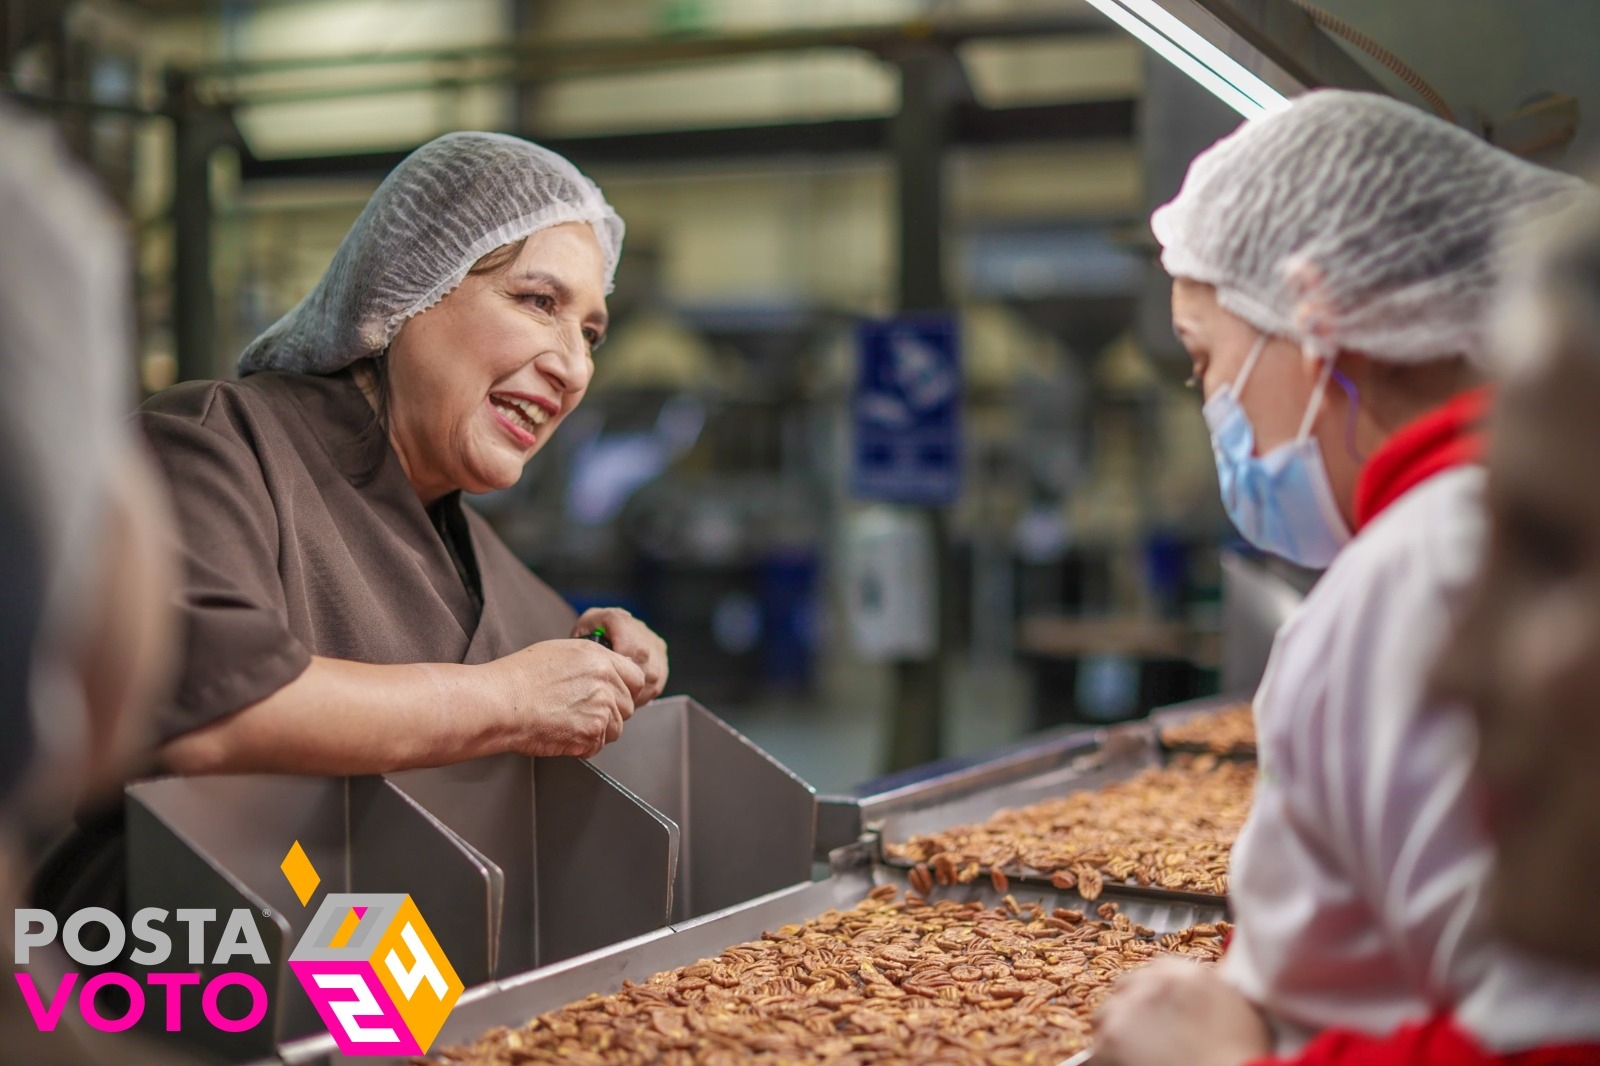 La candidata por la triple coalición dialogando con las trabajadoras de la empresa procesadora de nueces “La Nogalera”, en Ciudad Juárez, Chihuahua. Foto: Equipo XGR